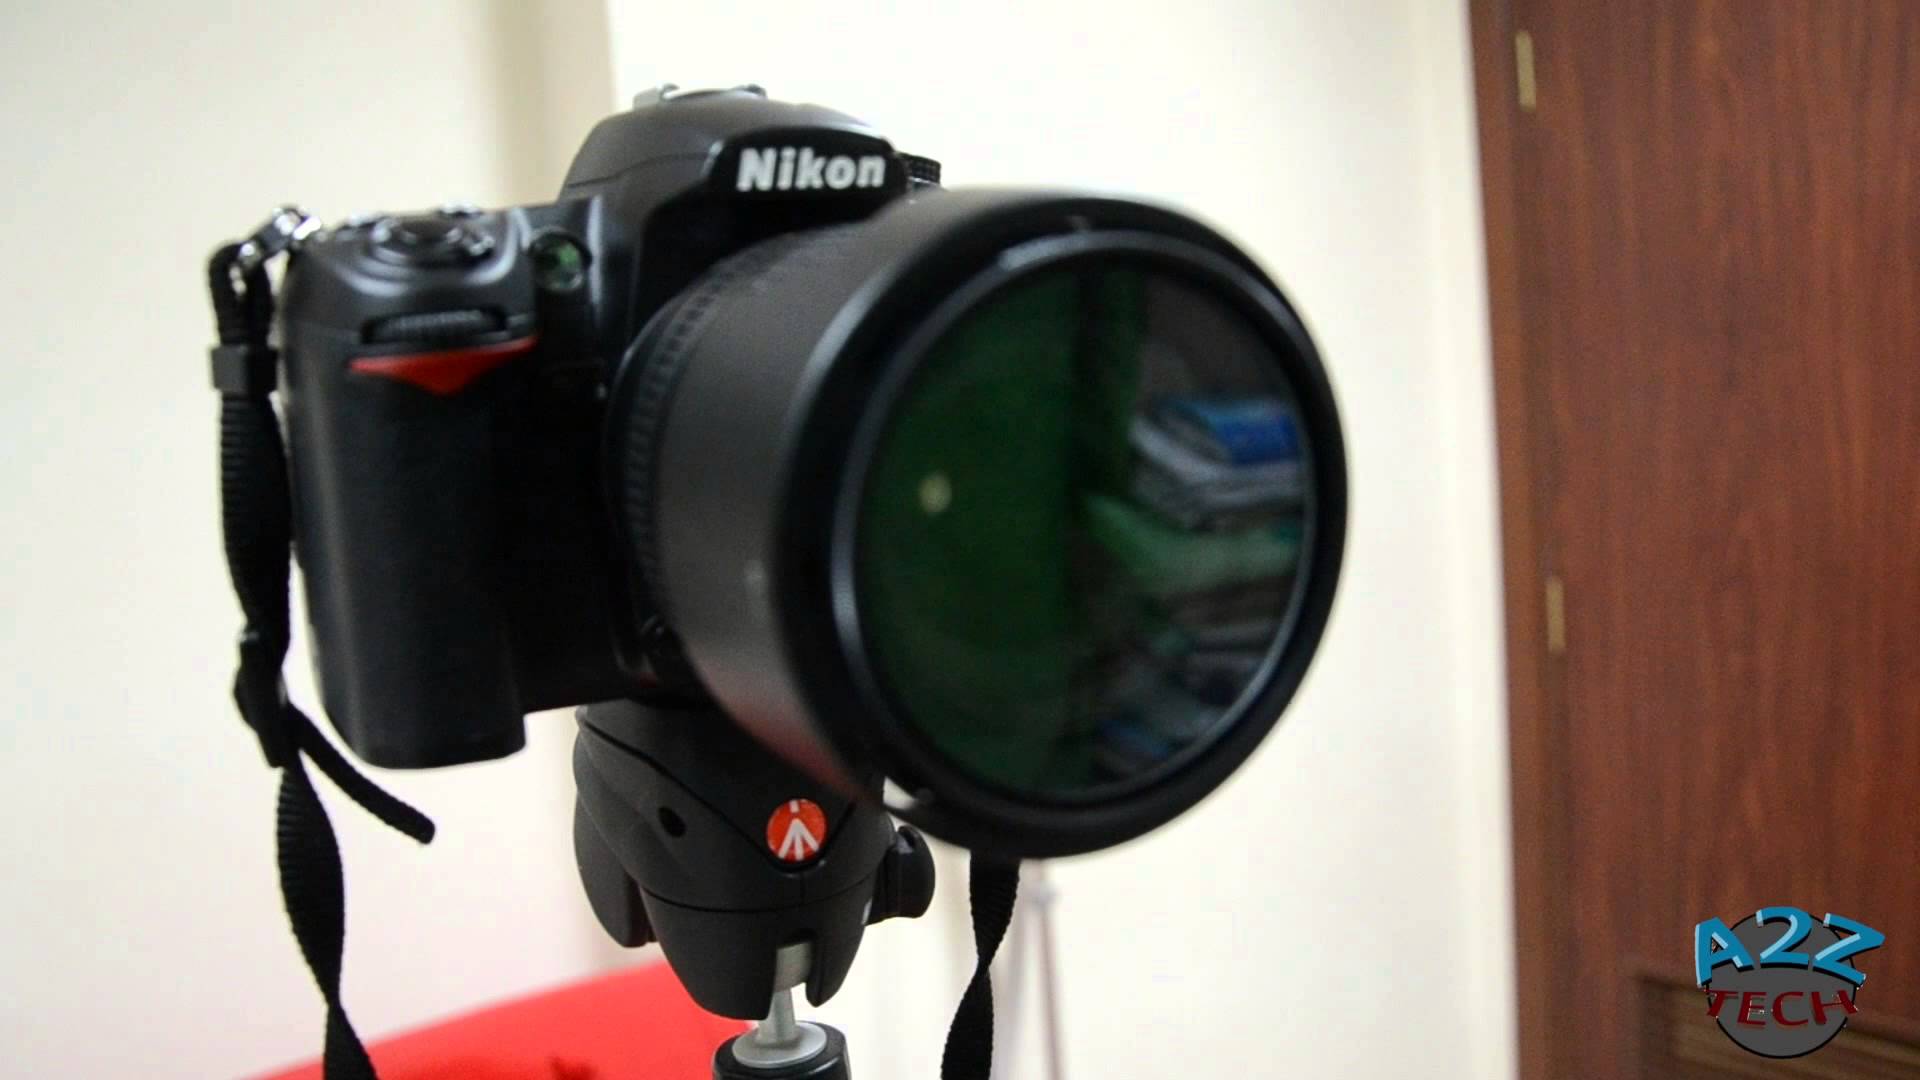 مراجعة : كاميرا نيكون Nikon D7000 - شبكة ابو نواف